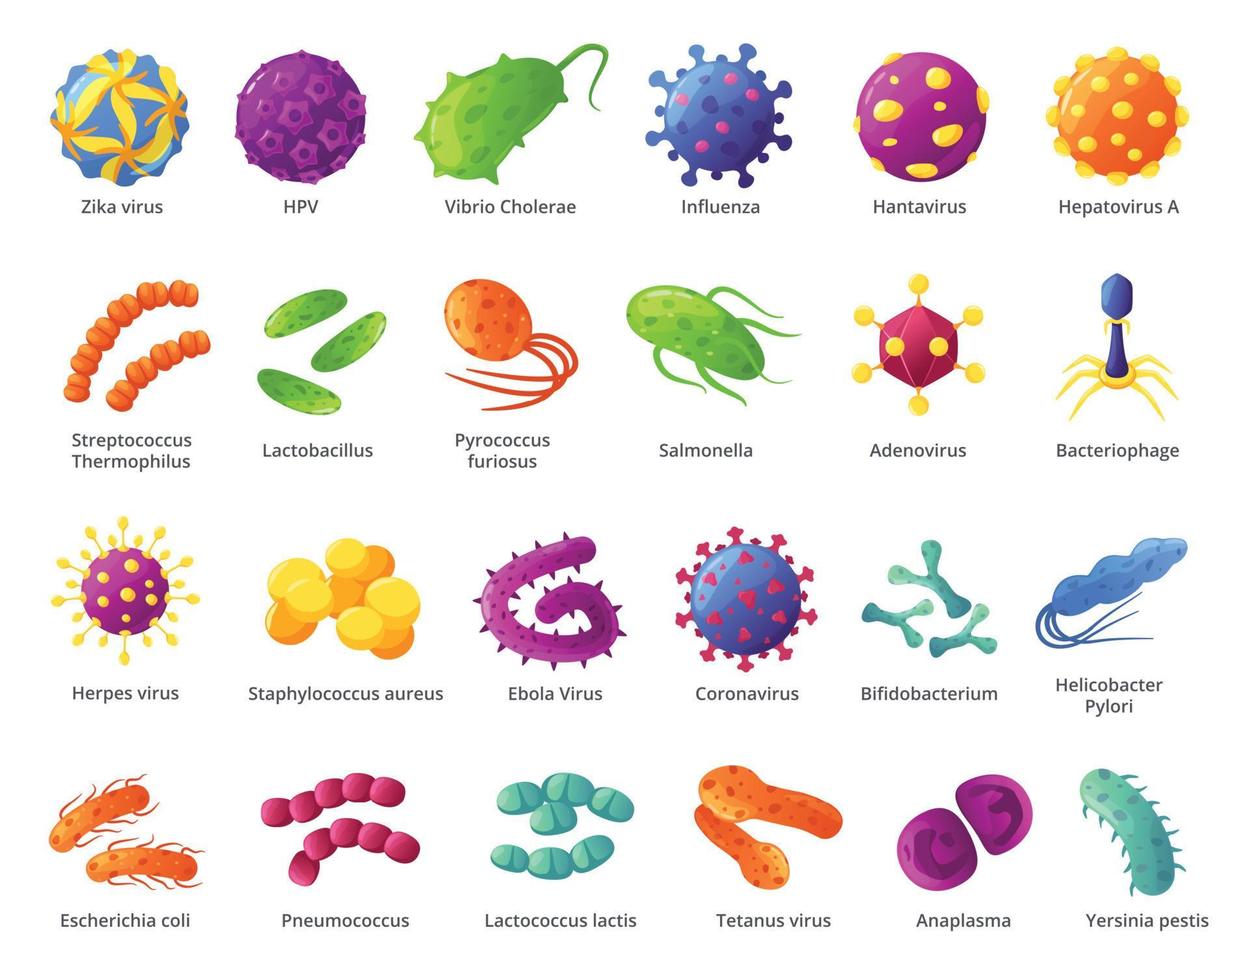 tecknad serie mikrob. biologisk mikroorganismer, virus celler, infekterande bakterier, bakterie. sjukdomsalstrande organismer och orsakar sjukdom mikrober vektor uppsättning